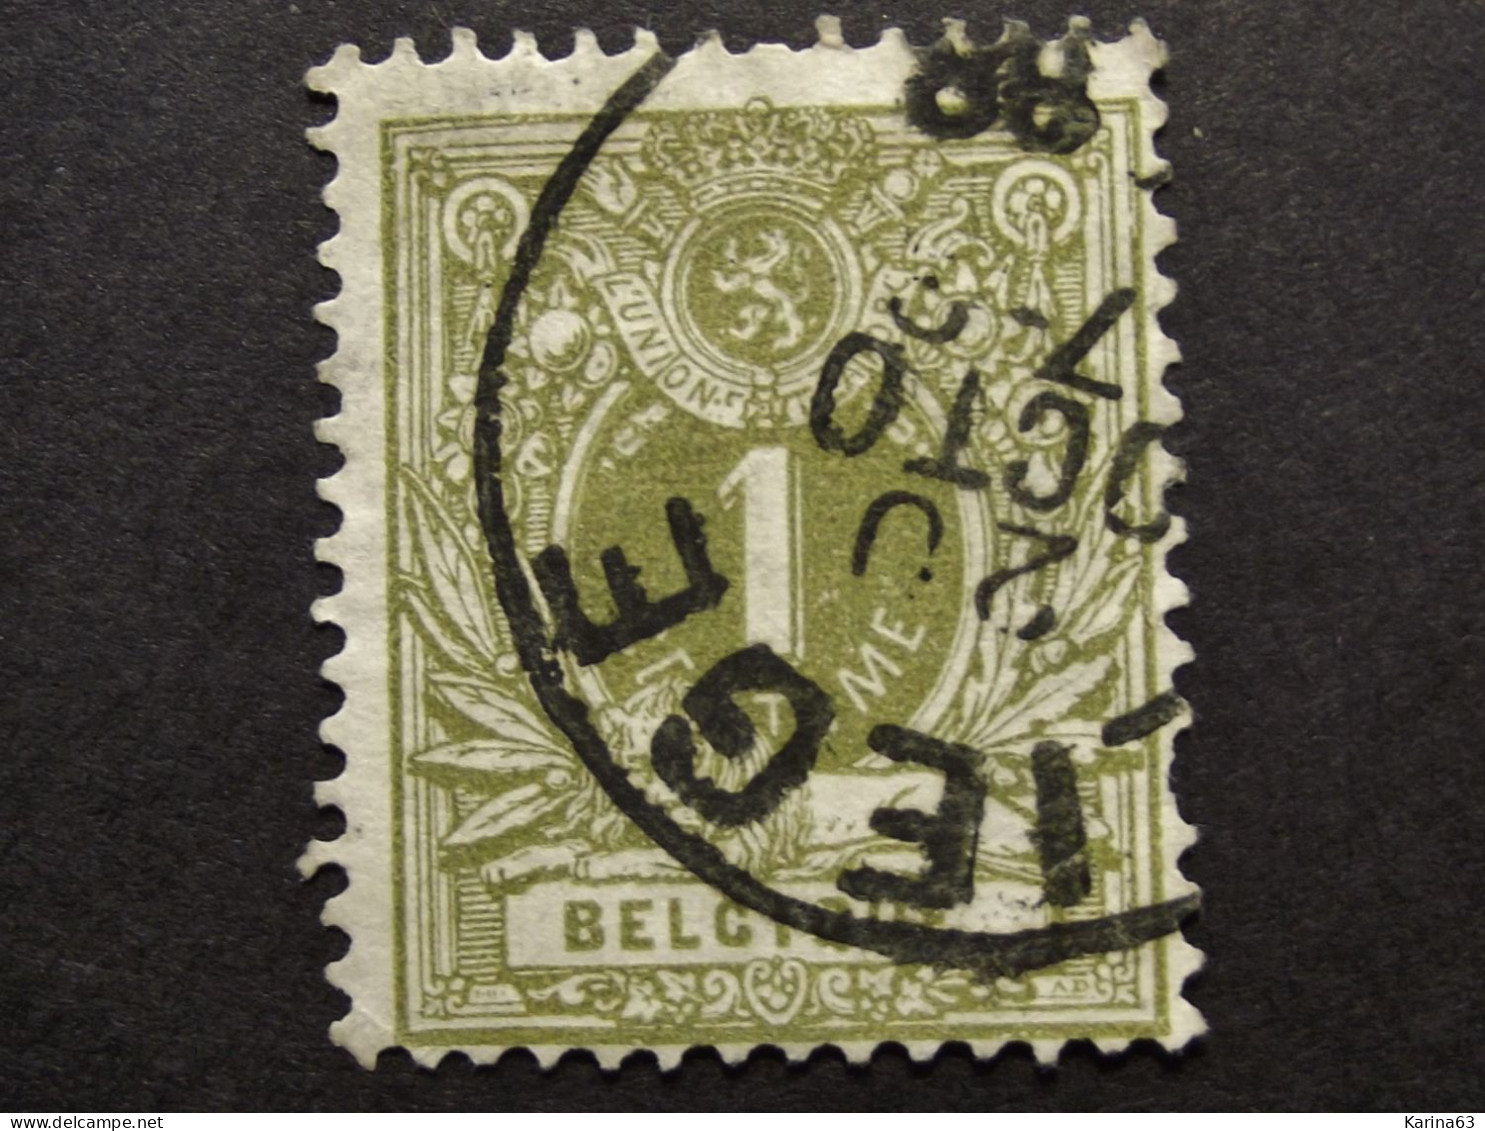 België - Belgique  1884 - OPB/COB ° 42  -  Liggende Leeuw -  Liège - 1888 - 1869-1888 Lion Couché (Liegender Löwe)